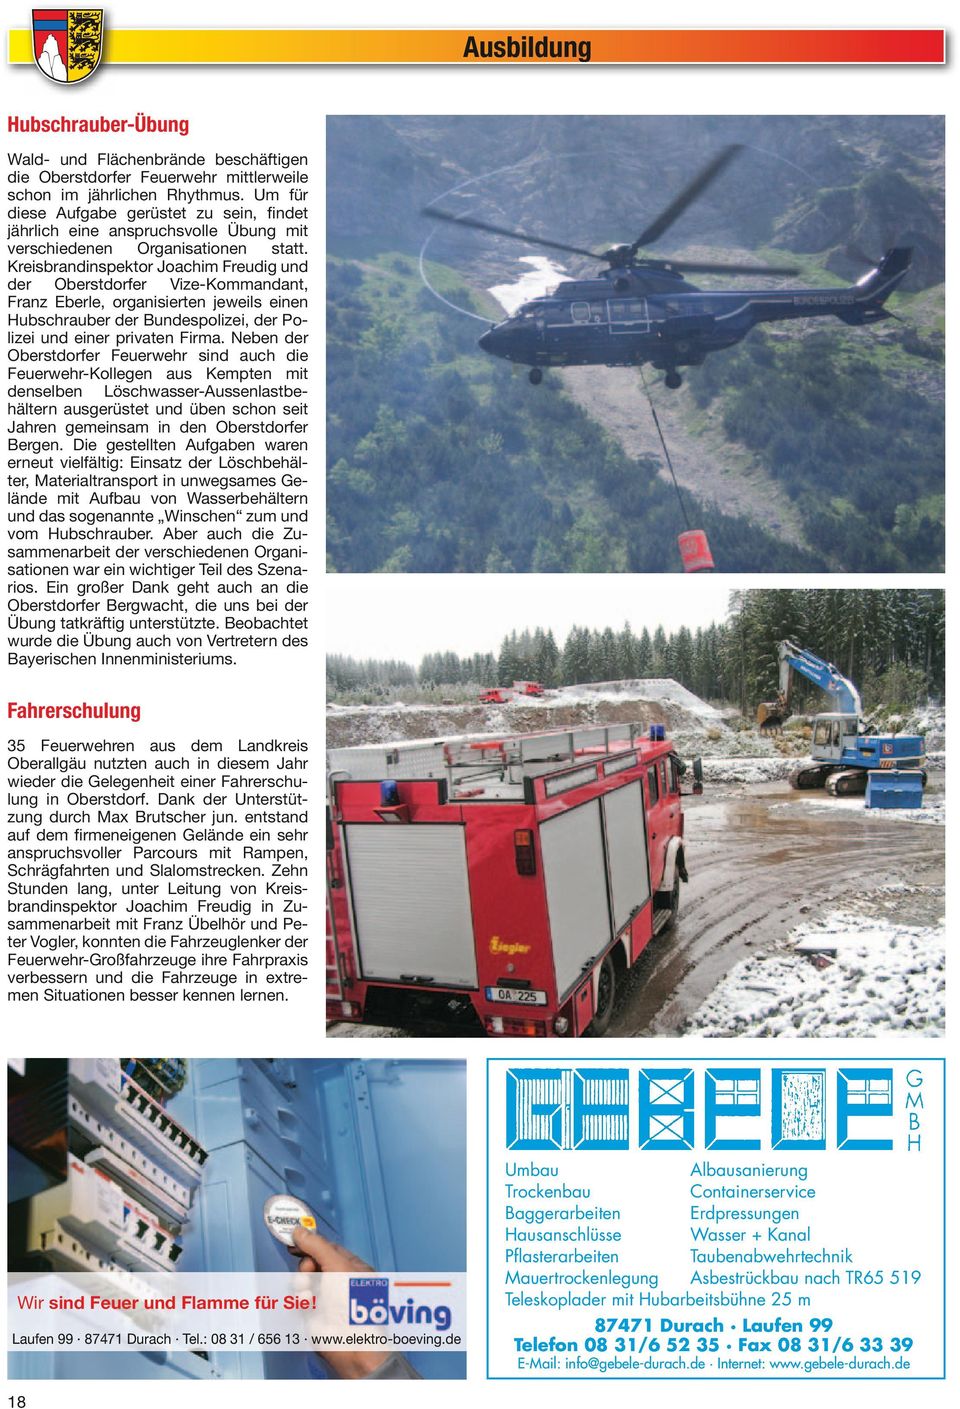 Kreis brandinspektor Joachim Freudig und der Oberstdorfer Vize-Kommandant, Franz Eberle, organisierten jeweils einen Hubschrauber der Bundespolizei, der Polizei und einer privaten Firma.